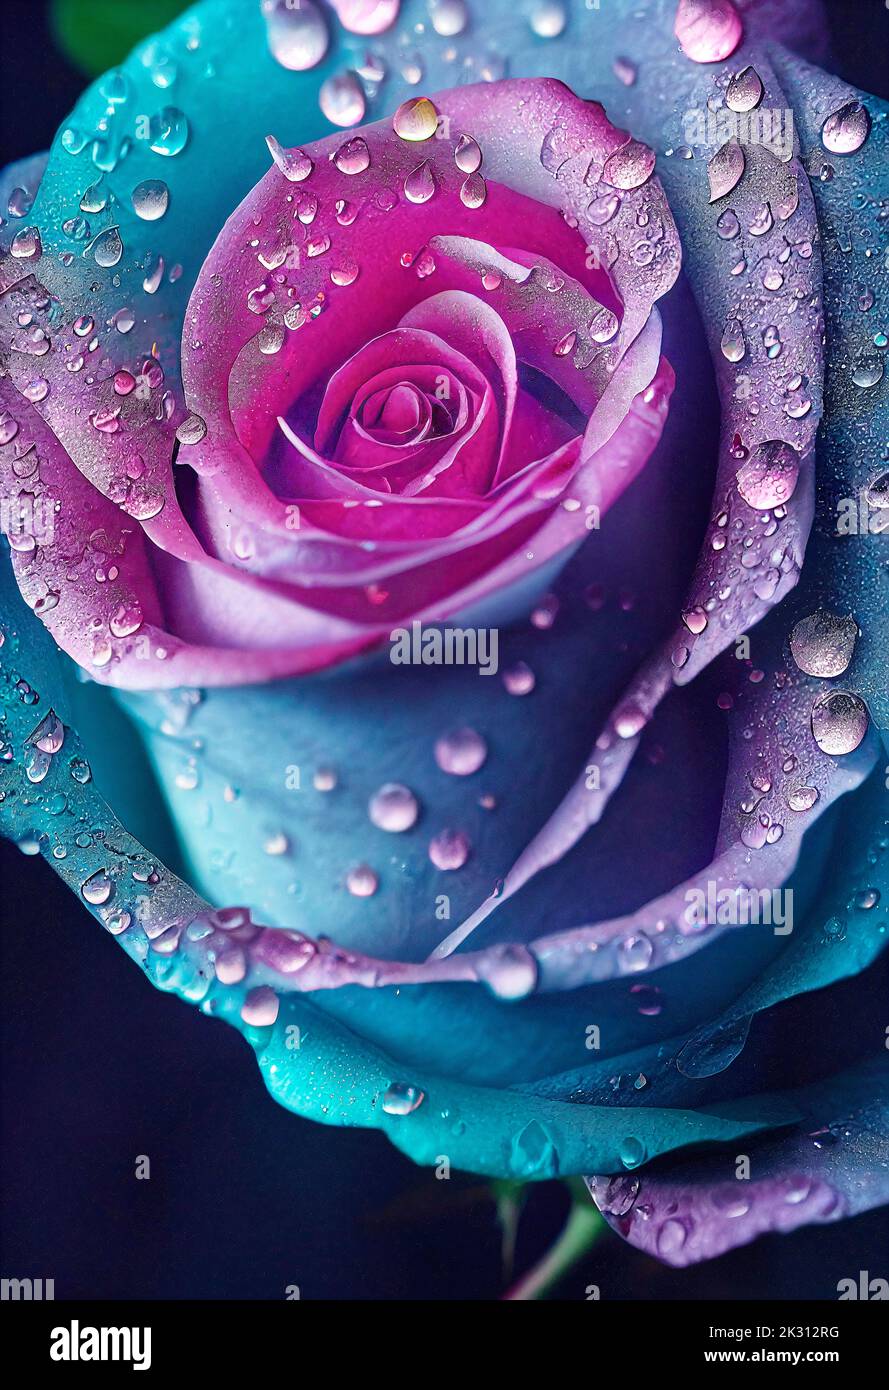 Tête de rose bleue et rose recouverte de gouttes de pluie Banque D'Images